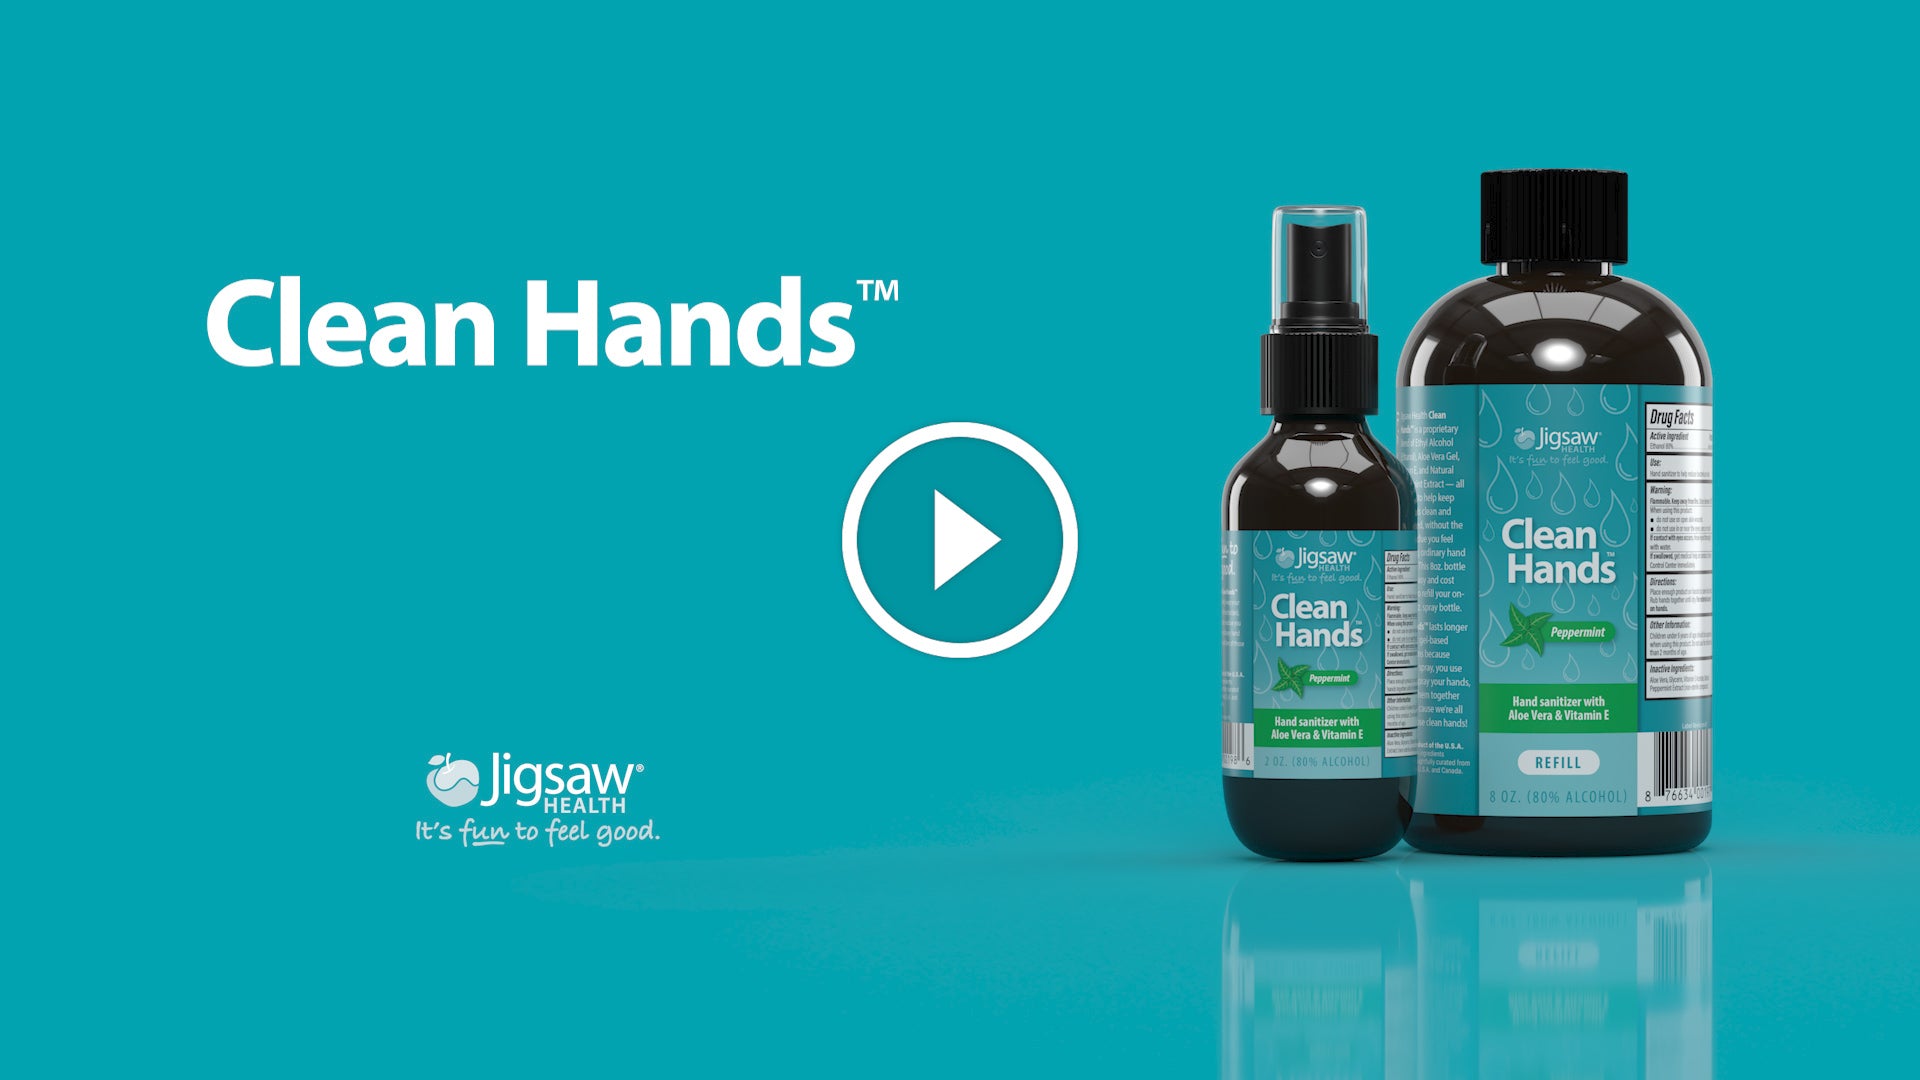 Clean Hands™ by Jigsaw Health